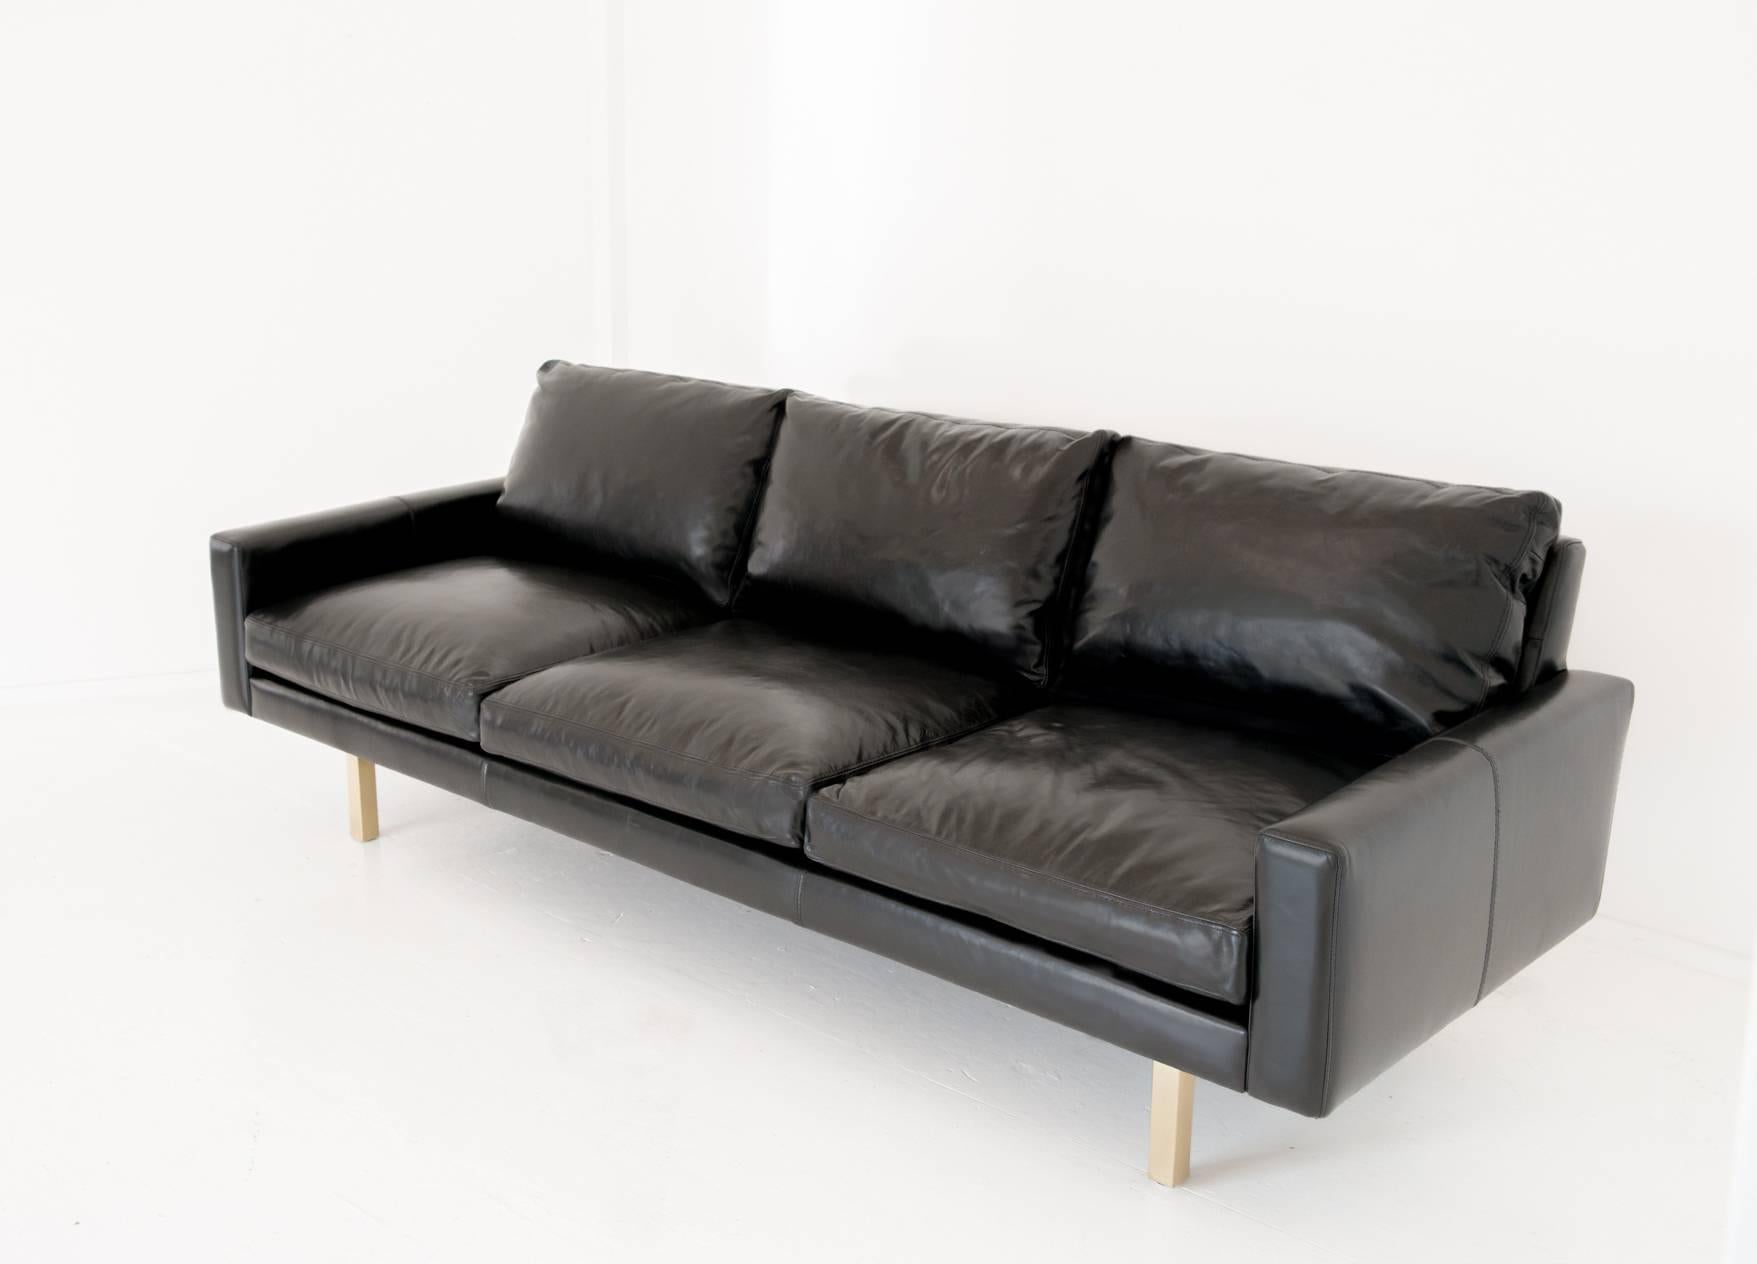 Das Sofa Standard ist auf den ersten Blick trügerisch einfach. Bei näherer Betrachtung ist es sowohl modern als auch nostalgisch, das Sofa, das Sie über Jahrzehnte hinweg von Haus zu Haus begleiten wird.

Gepolstert mit einem Vollanilin-Wachsleder